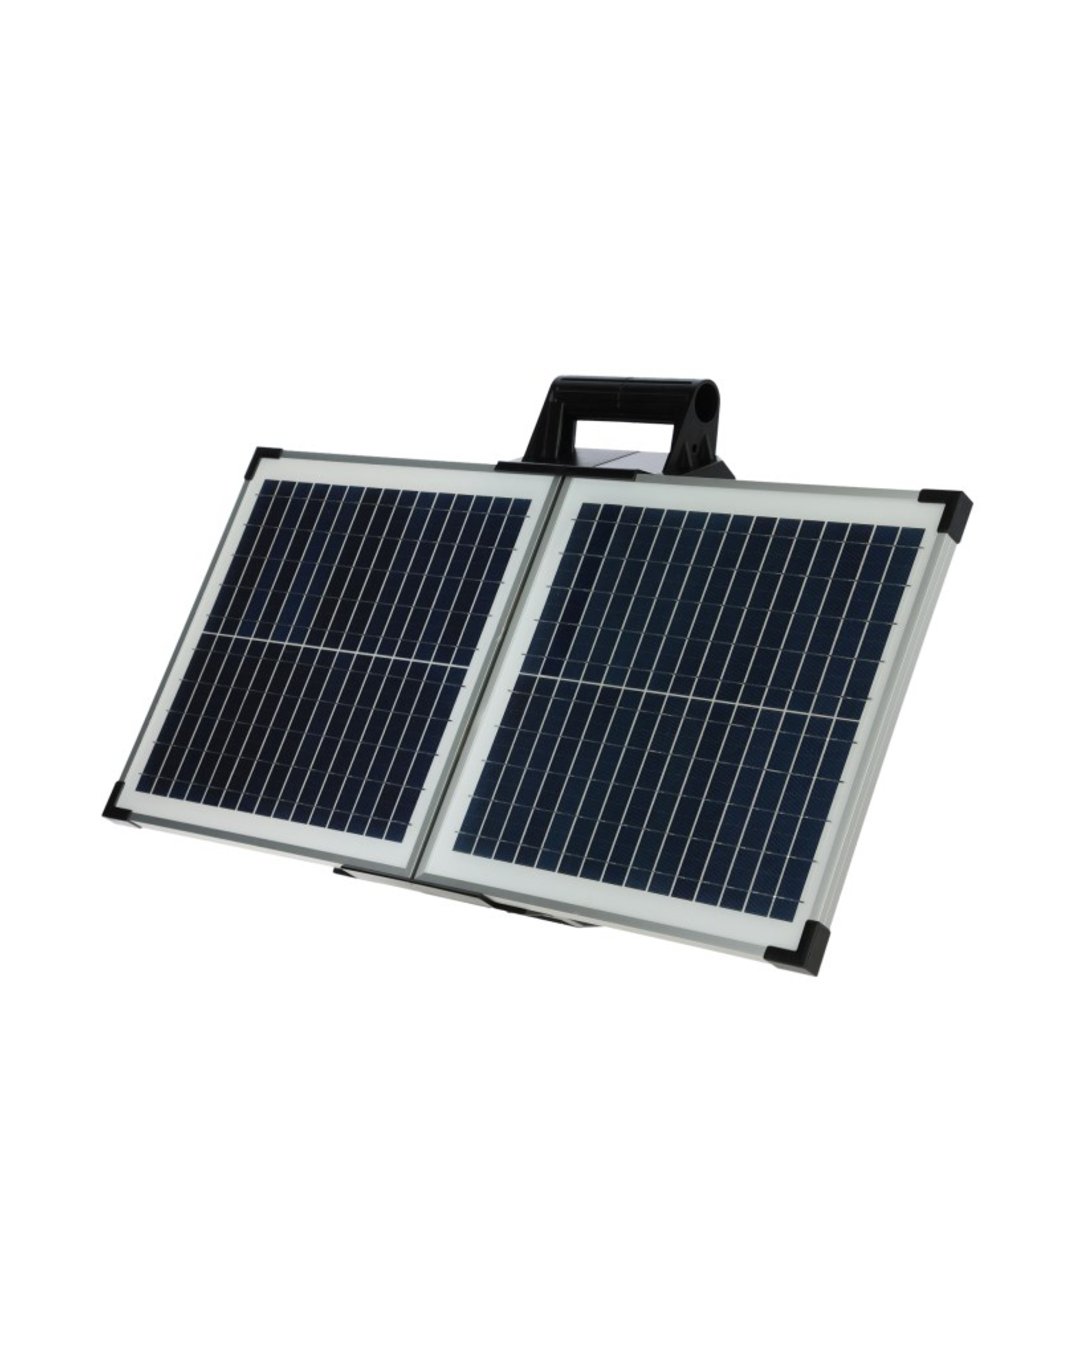 Solar-Weidezaungerät Sun Power S 2400 smart